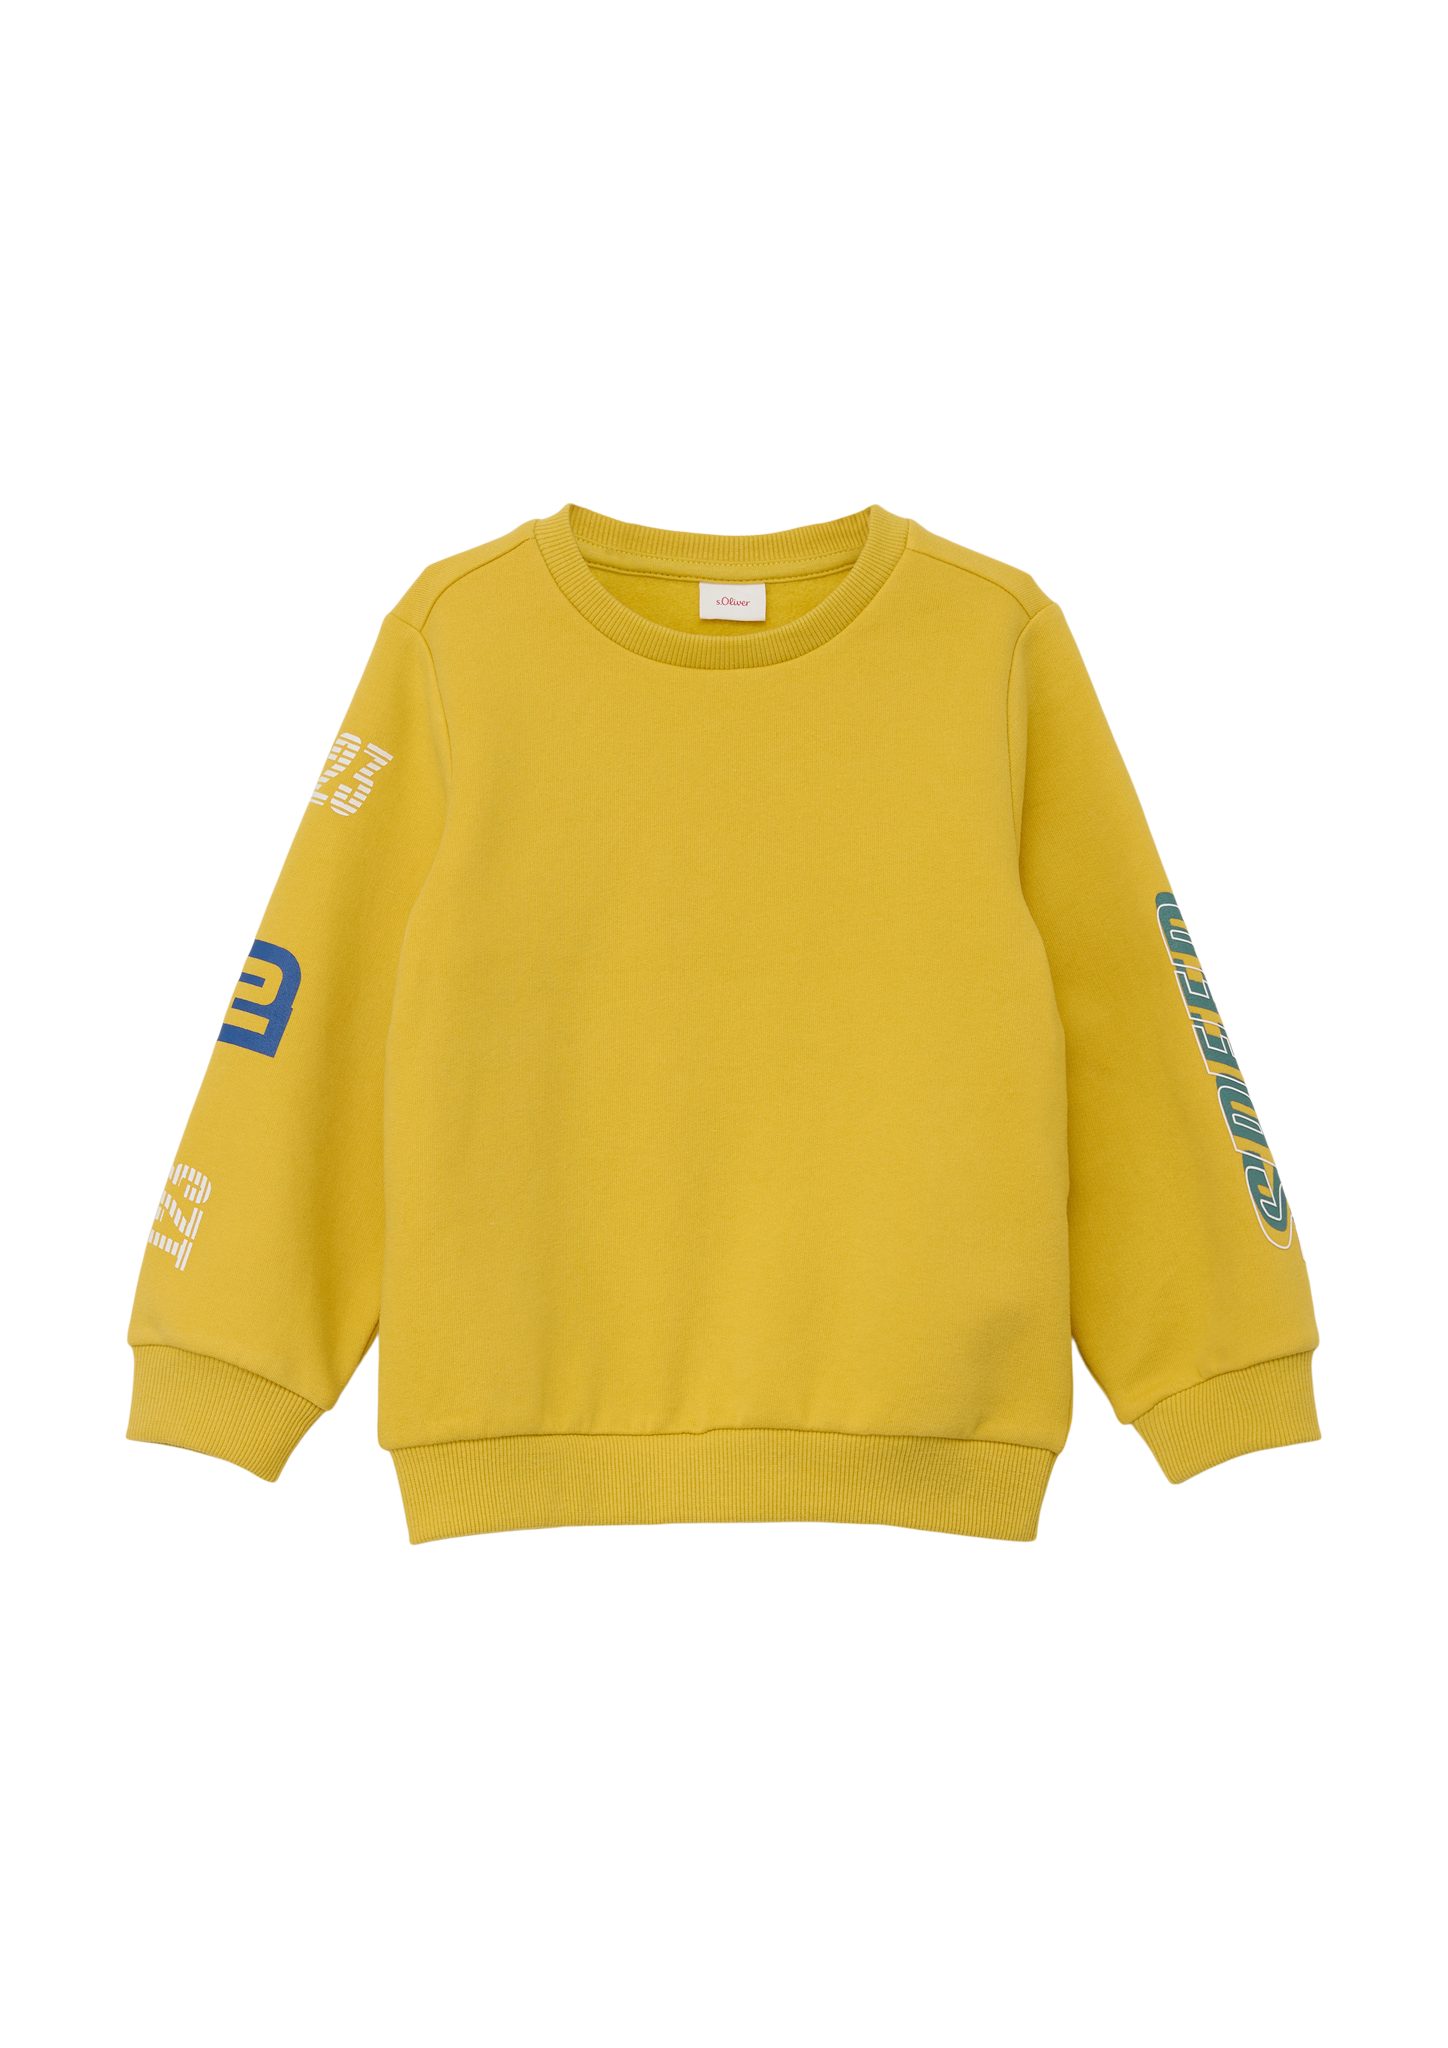 Sweatshirt Baumwollmix Sweatshirt gelb s.Oliver aus